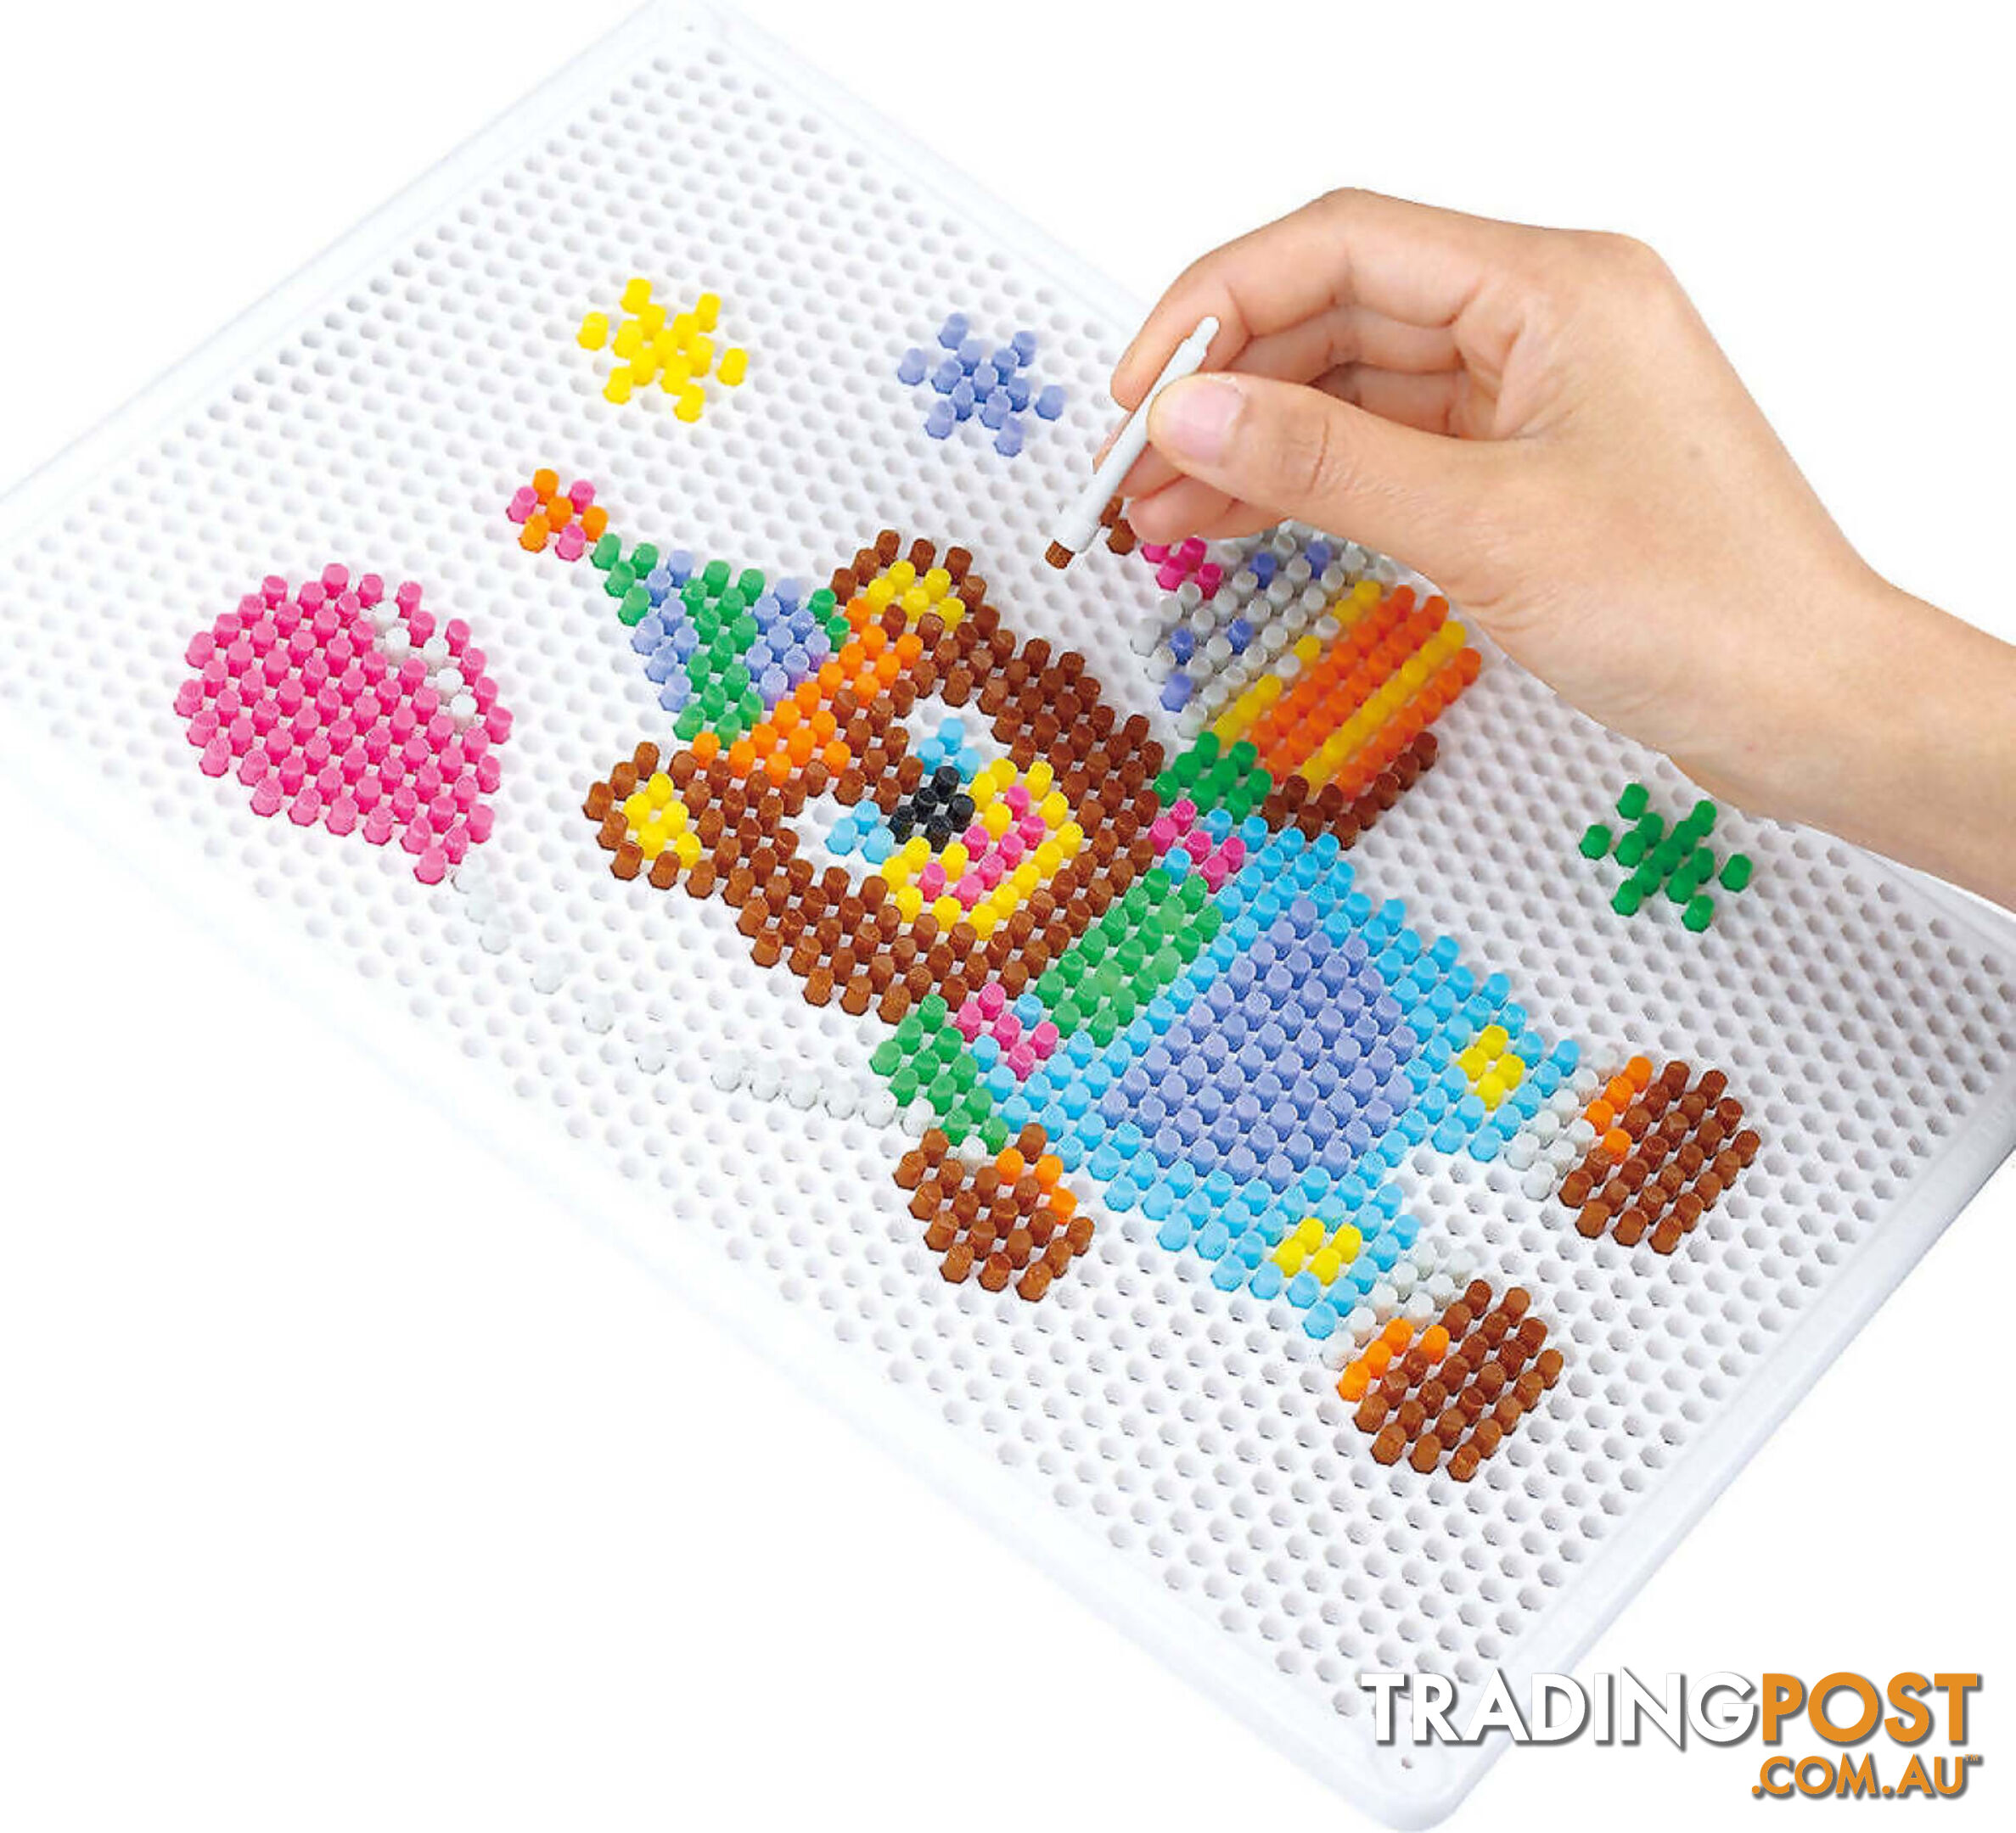 Playgo Toys Ent. Ltd - Peg-a-mosaic - Art66102 - 4892401073105